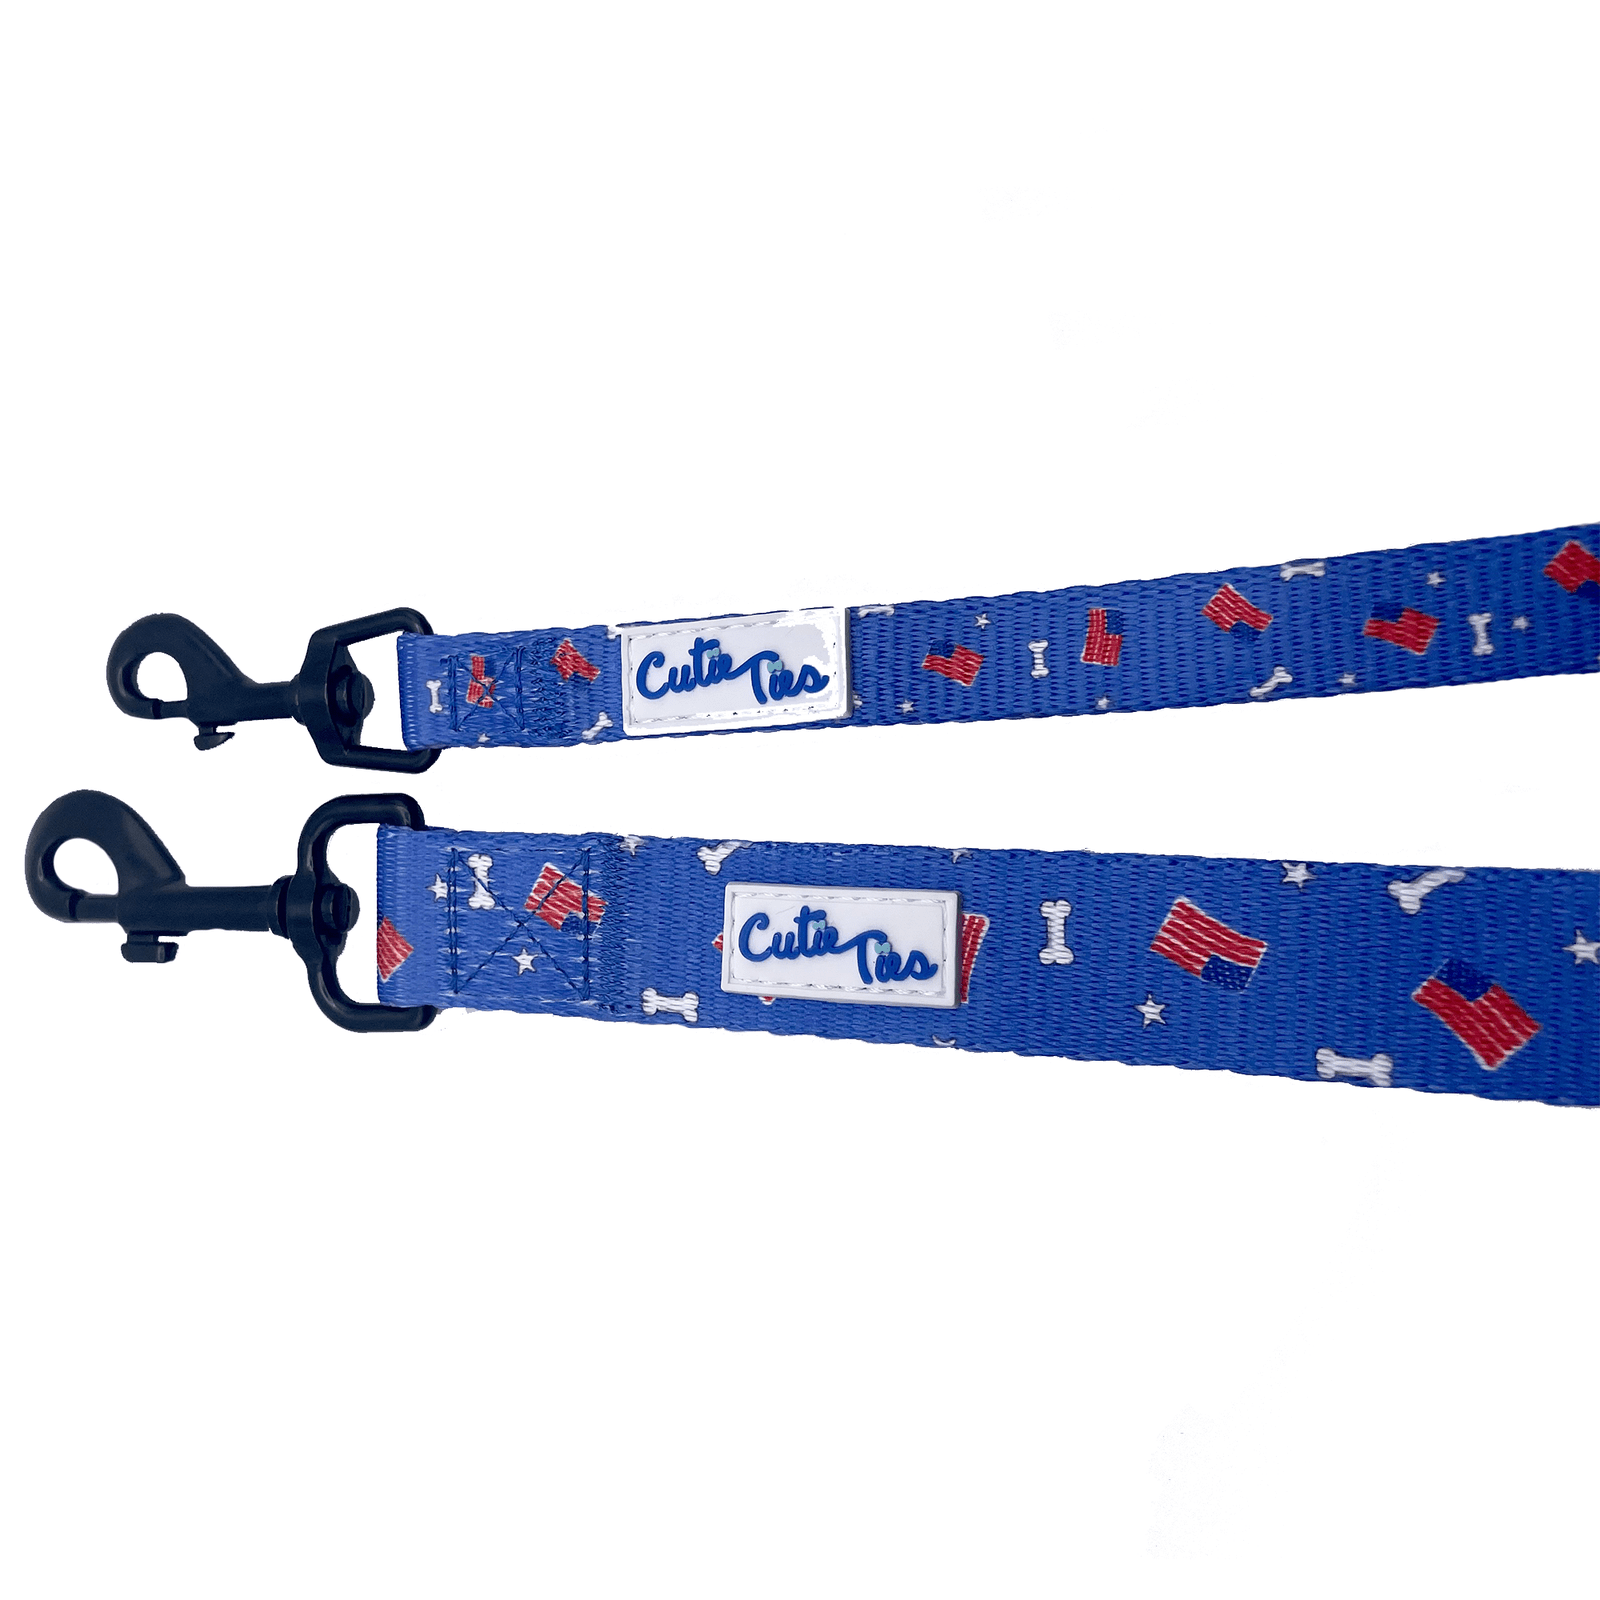 Cuties Ties - Dog leash - Small 5ft L, 1/2" W